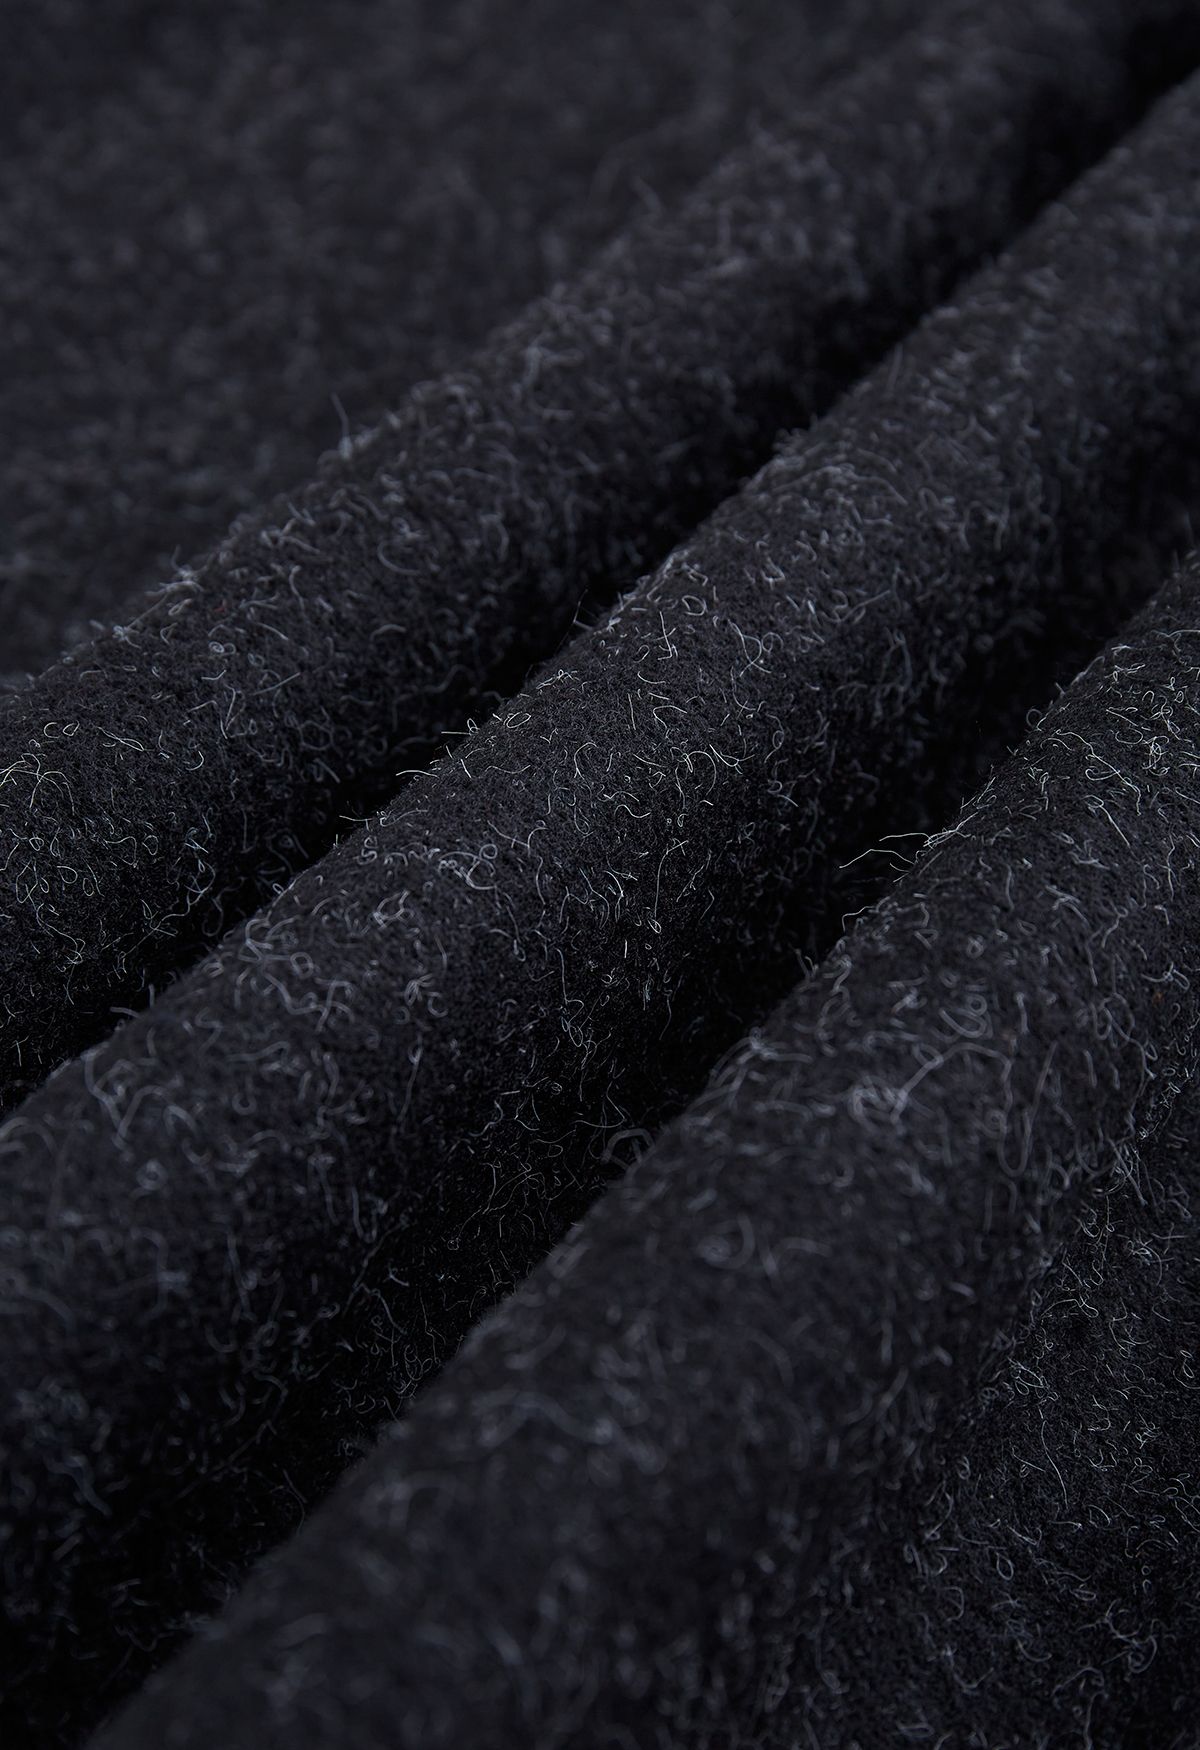 Poncho con capucha de piel sintética en mezcla de lana en negro